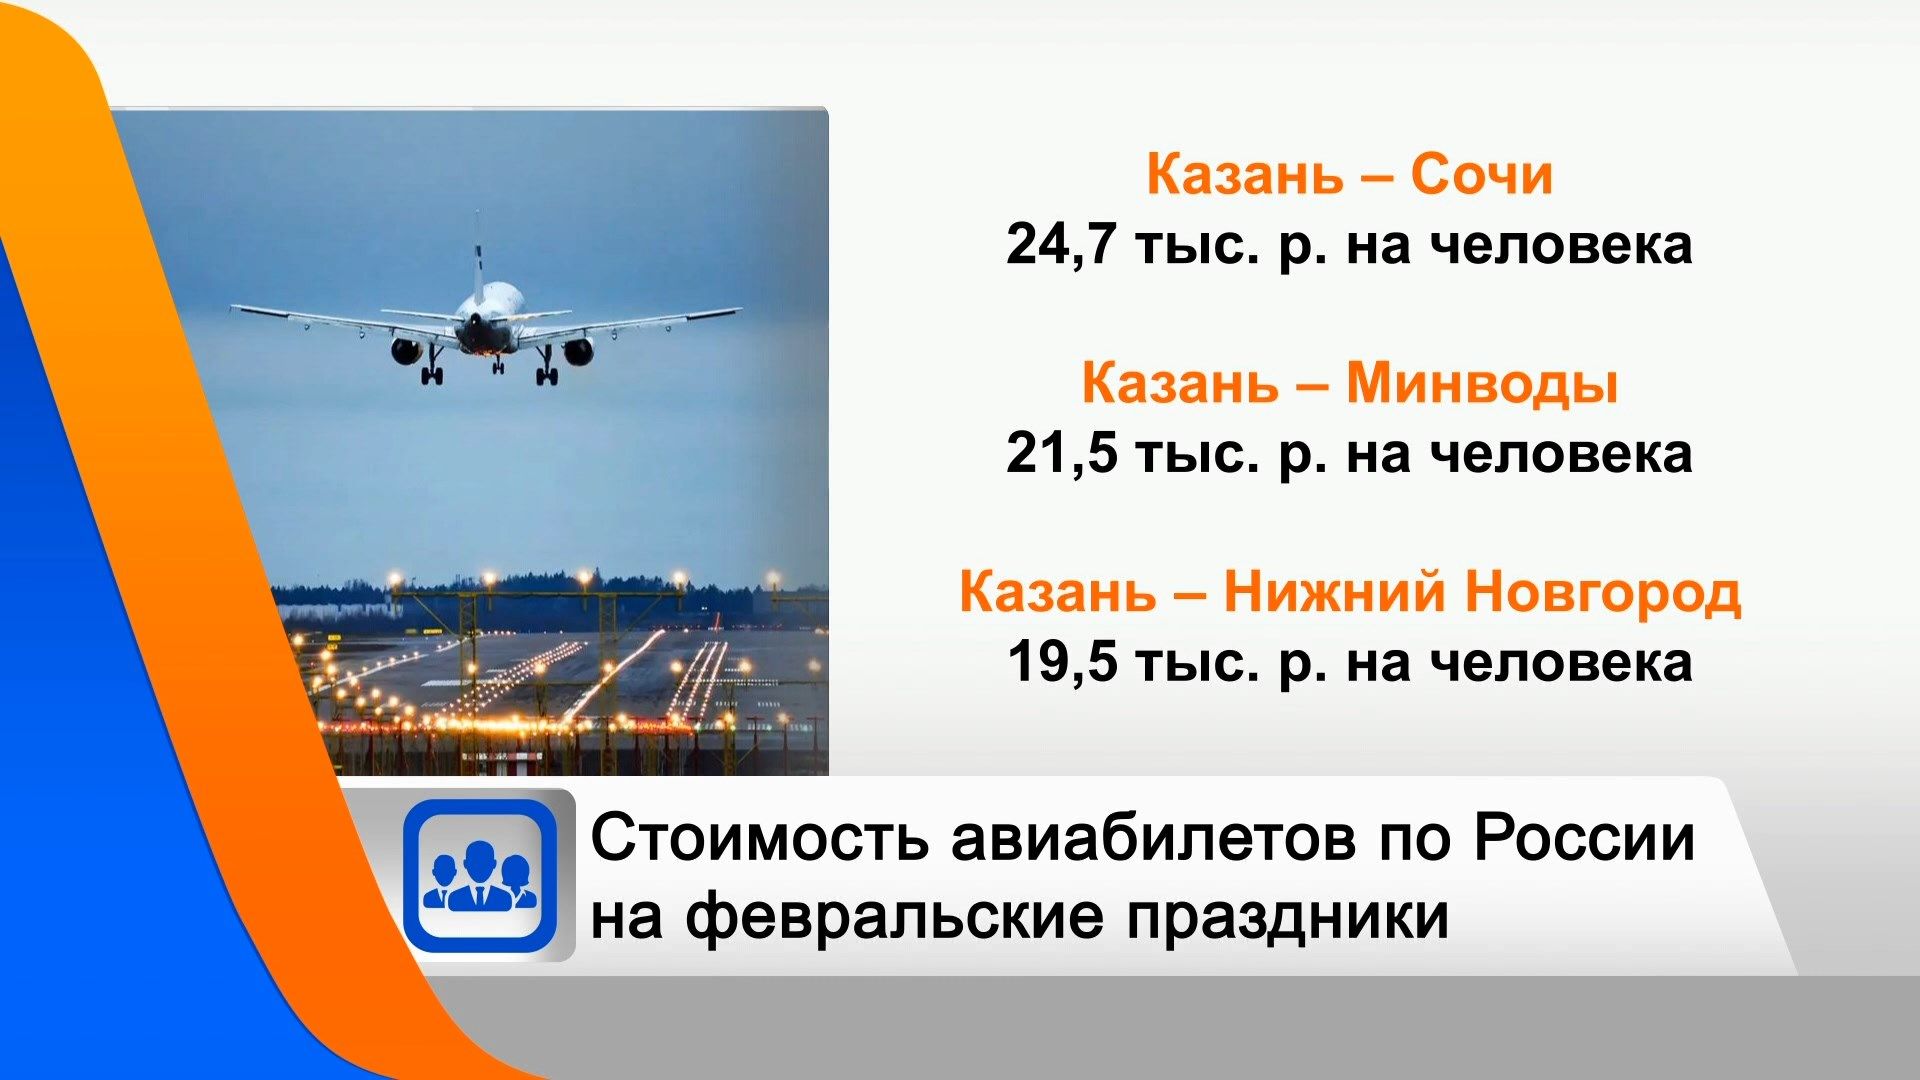 Стало известно, сколько стоят авиабилеты из Казани на февральские праздники